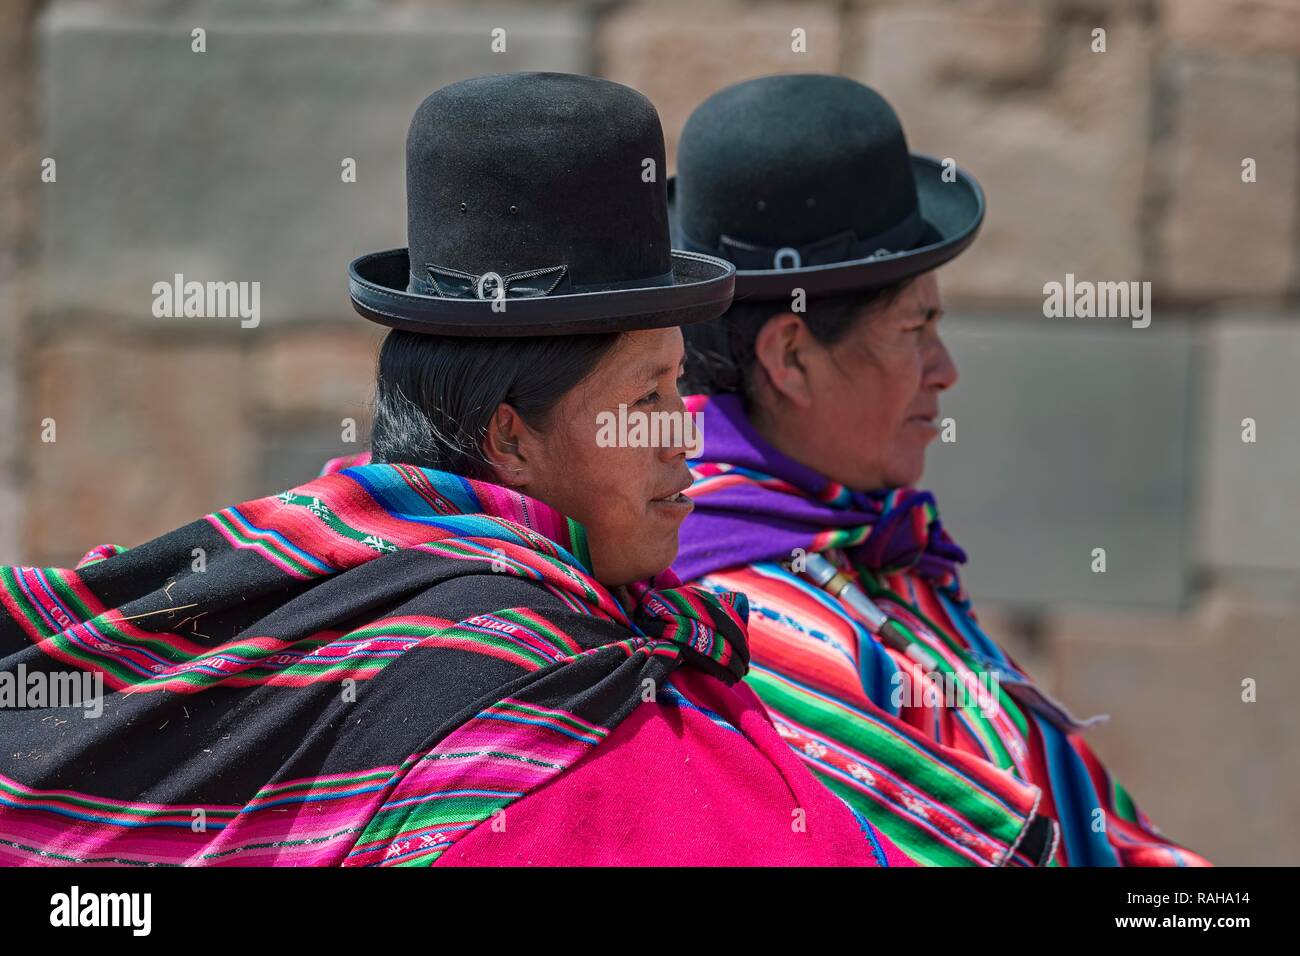 Las mujeres indígenas (chola, cholita) en típicos trajes nacionales (pollera, overskirt y bufanda, manta) con sombrero típico (melón Foto de stock